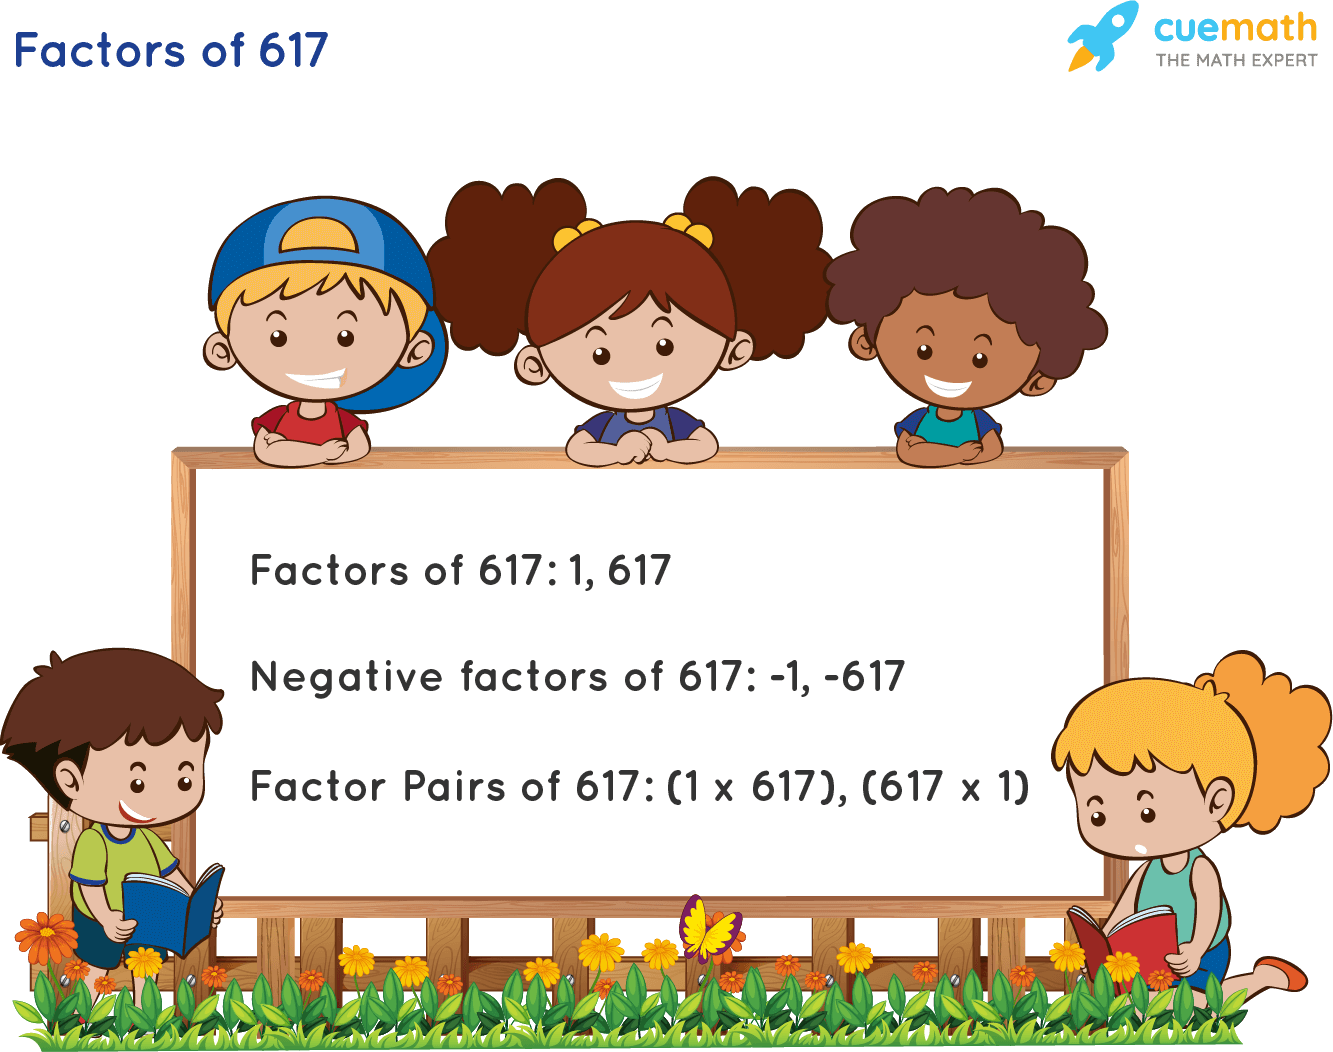 Factors of 617